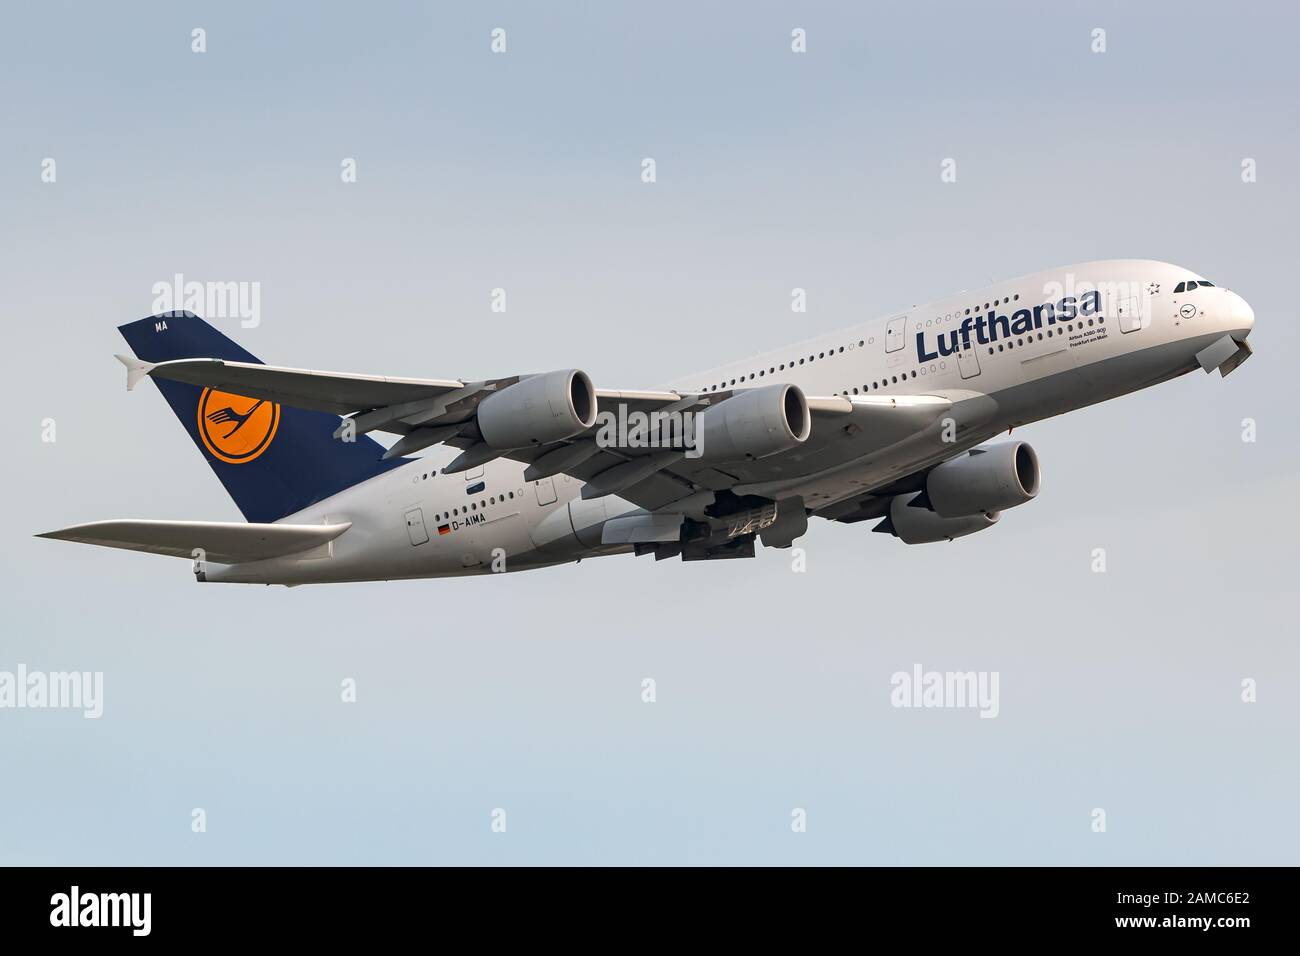 Frankfurt, Deutschland - 22. April 2018: Lufthansa Airbus A380-Flugzeug am Frankfurter Flughafen (FRA) in Deutschland. Airbus ist ein Flugzeughersteller von Stockfoto